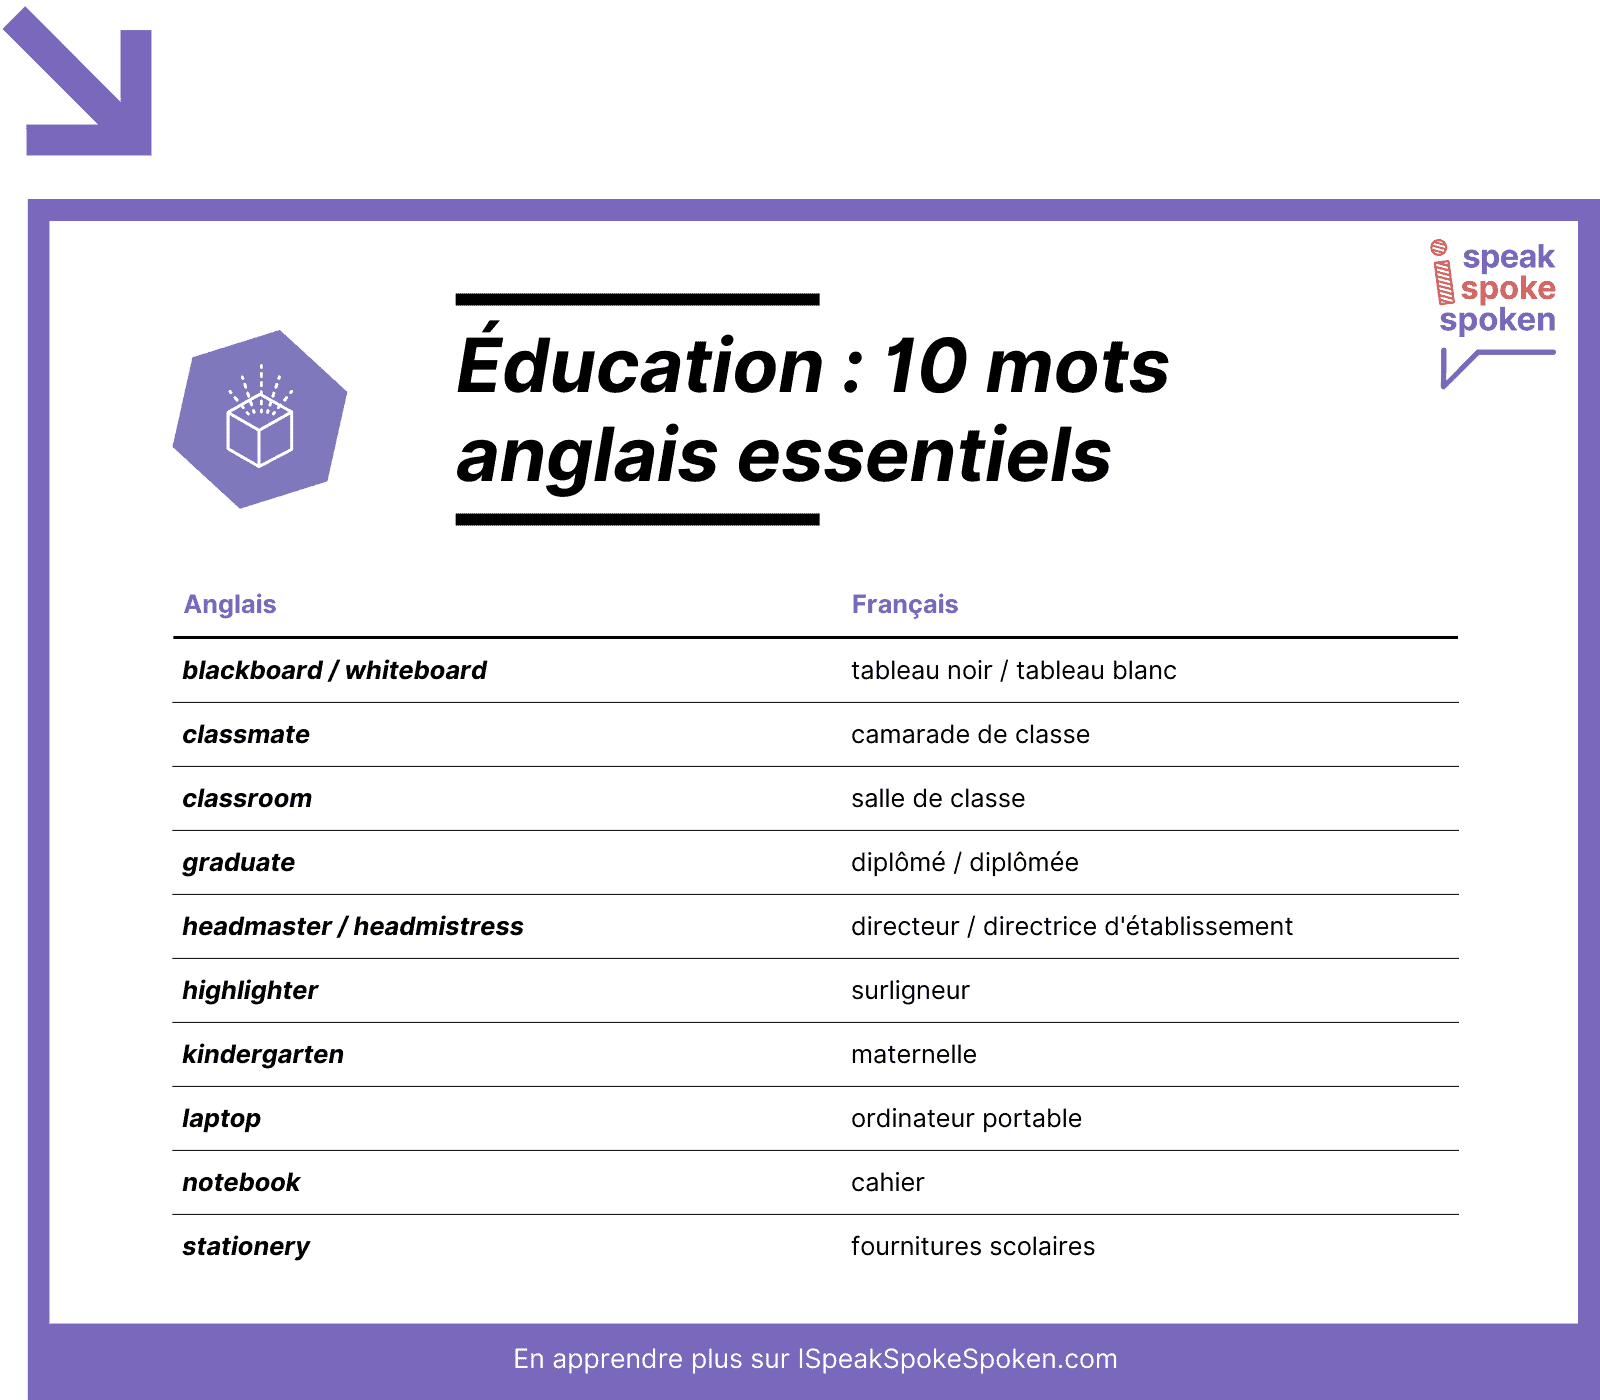 10 mots de vocabulaire anglais essentiels liés à l’éducation